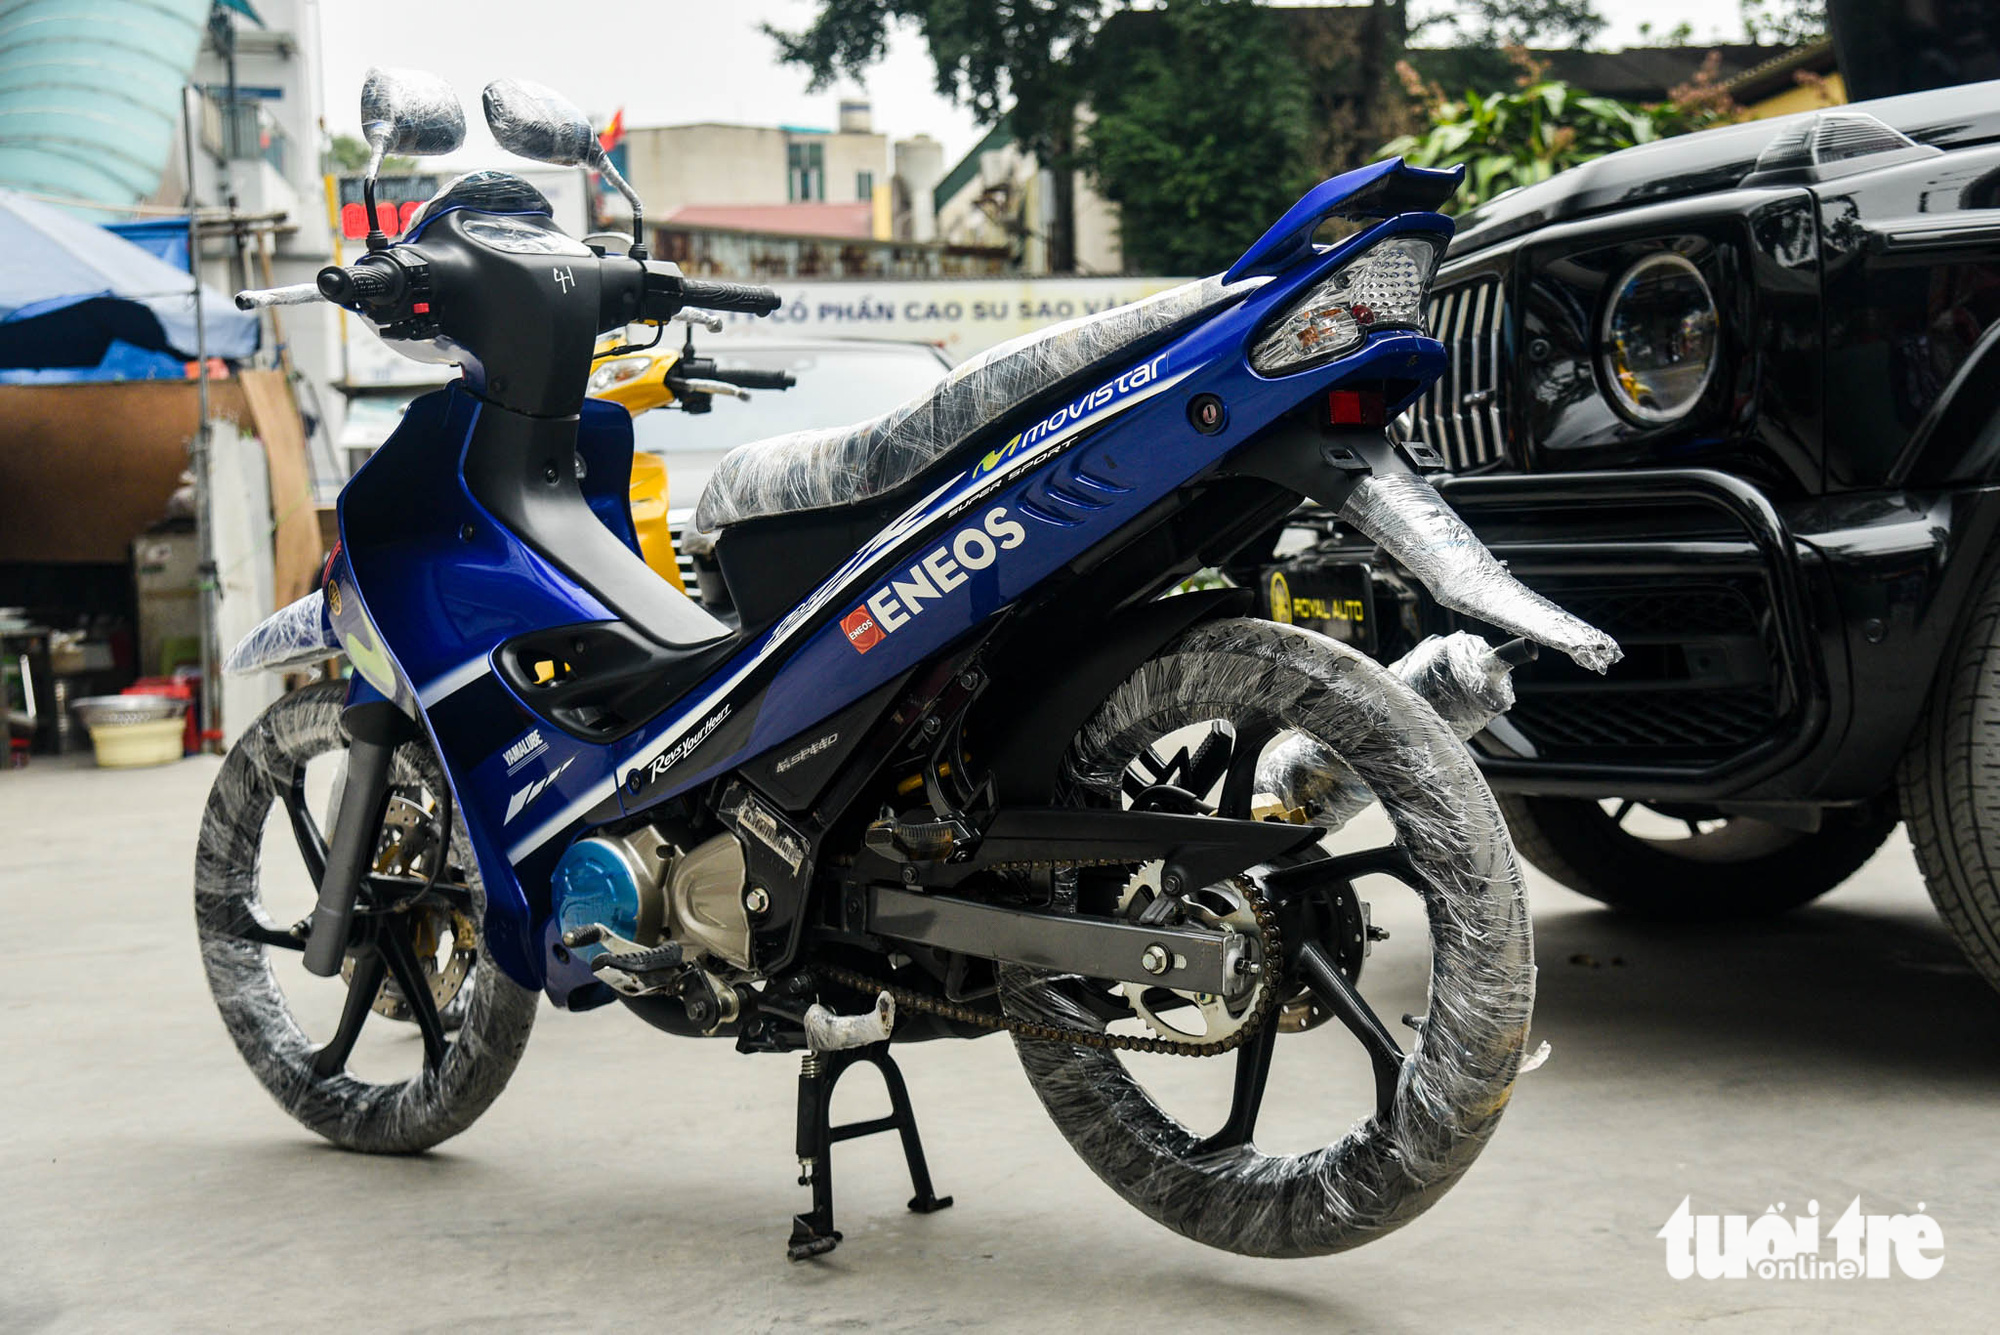 Yamaha 125ZR bản giới hạn giá khoảng 600 triệu đồng tại Hà Nội, dành cho dân chơi thích hàng độc - Ảnh 2.